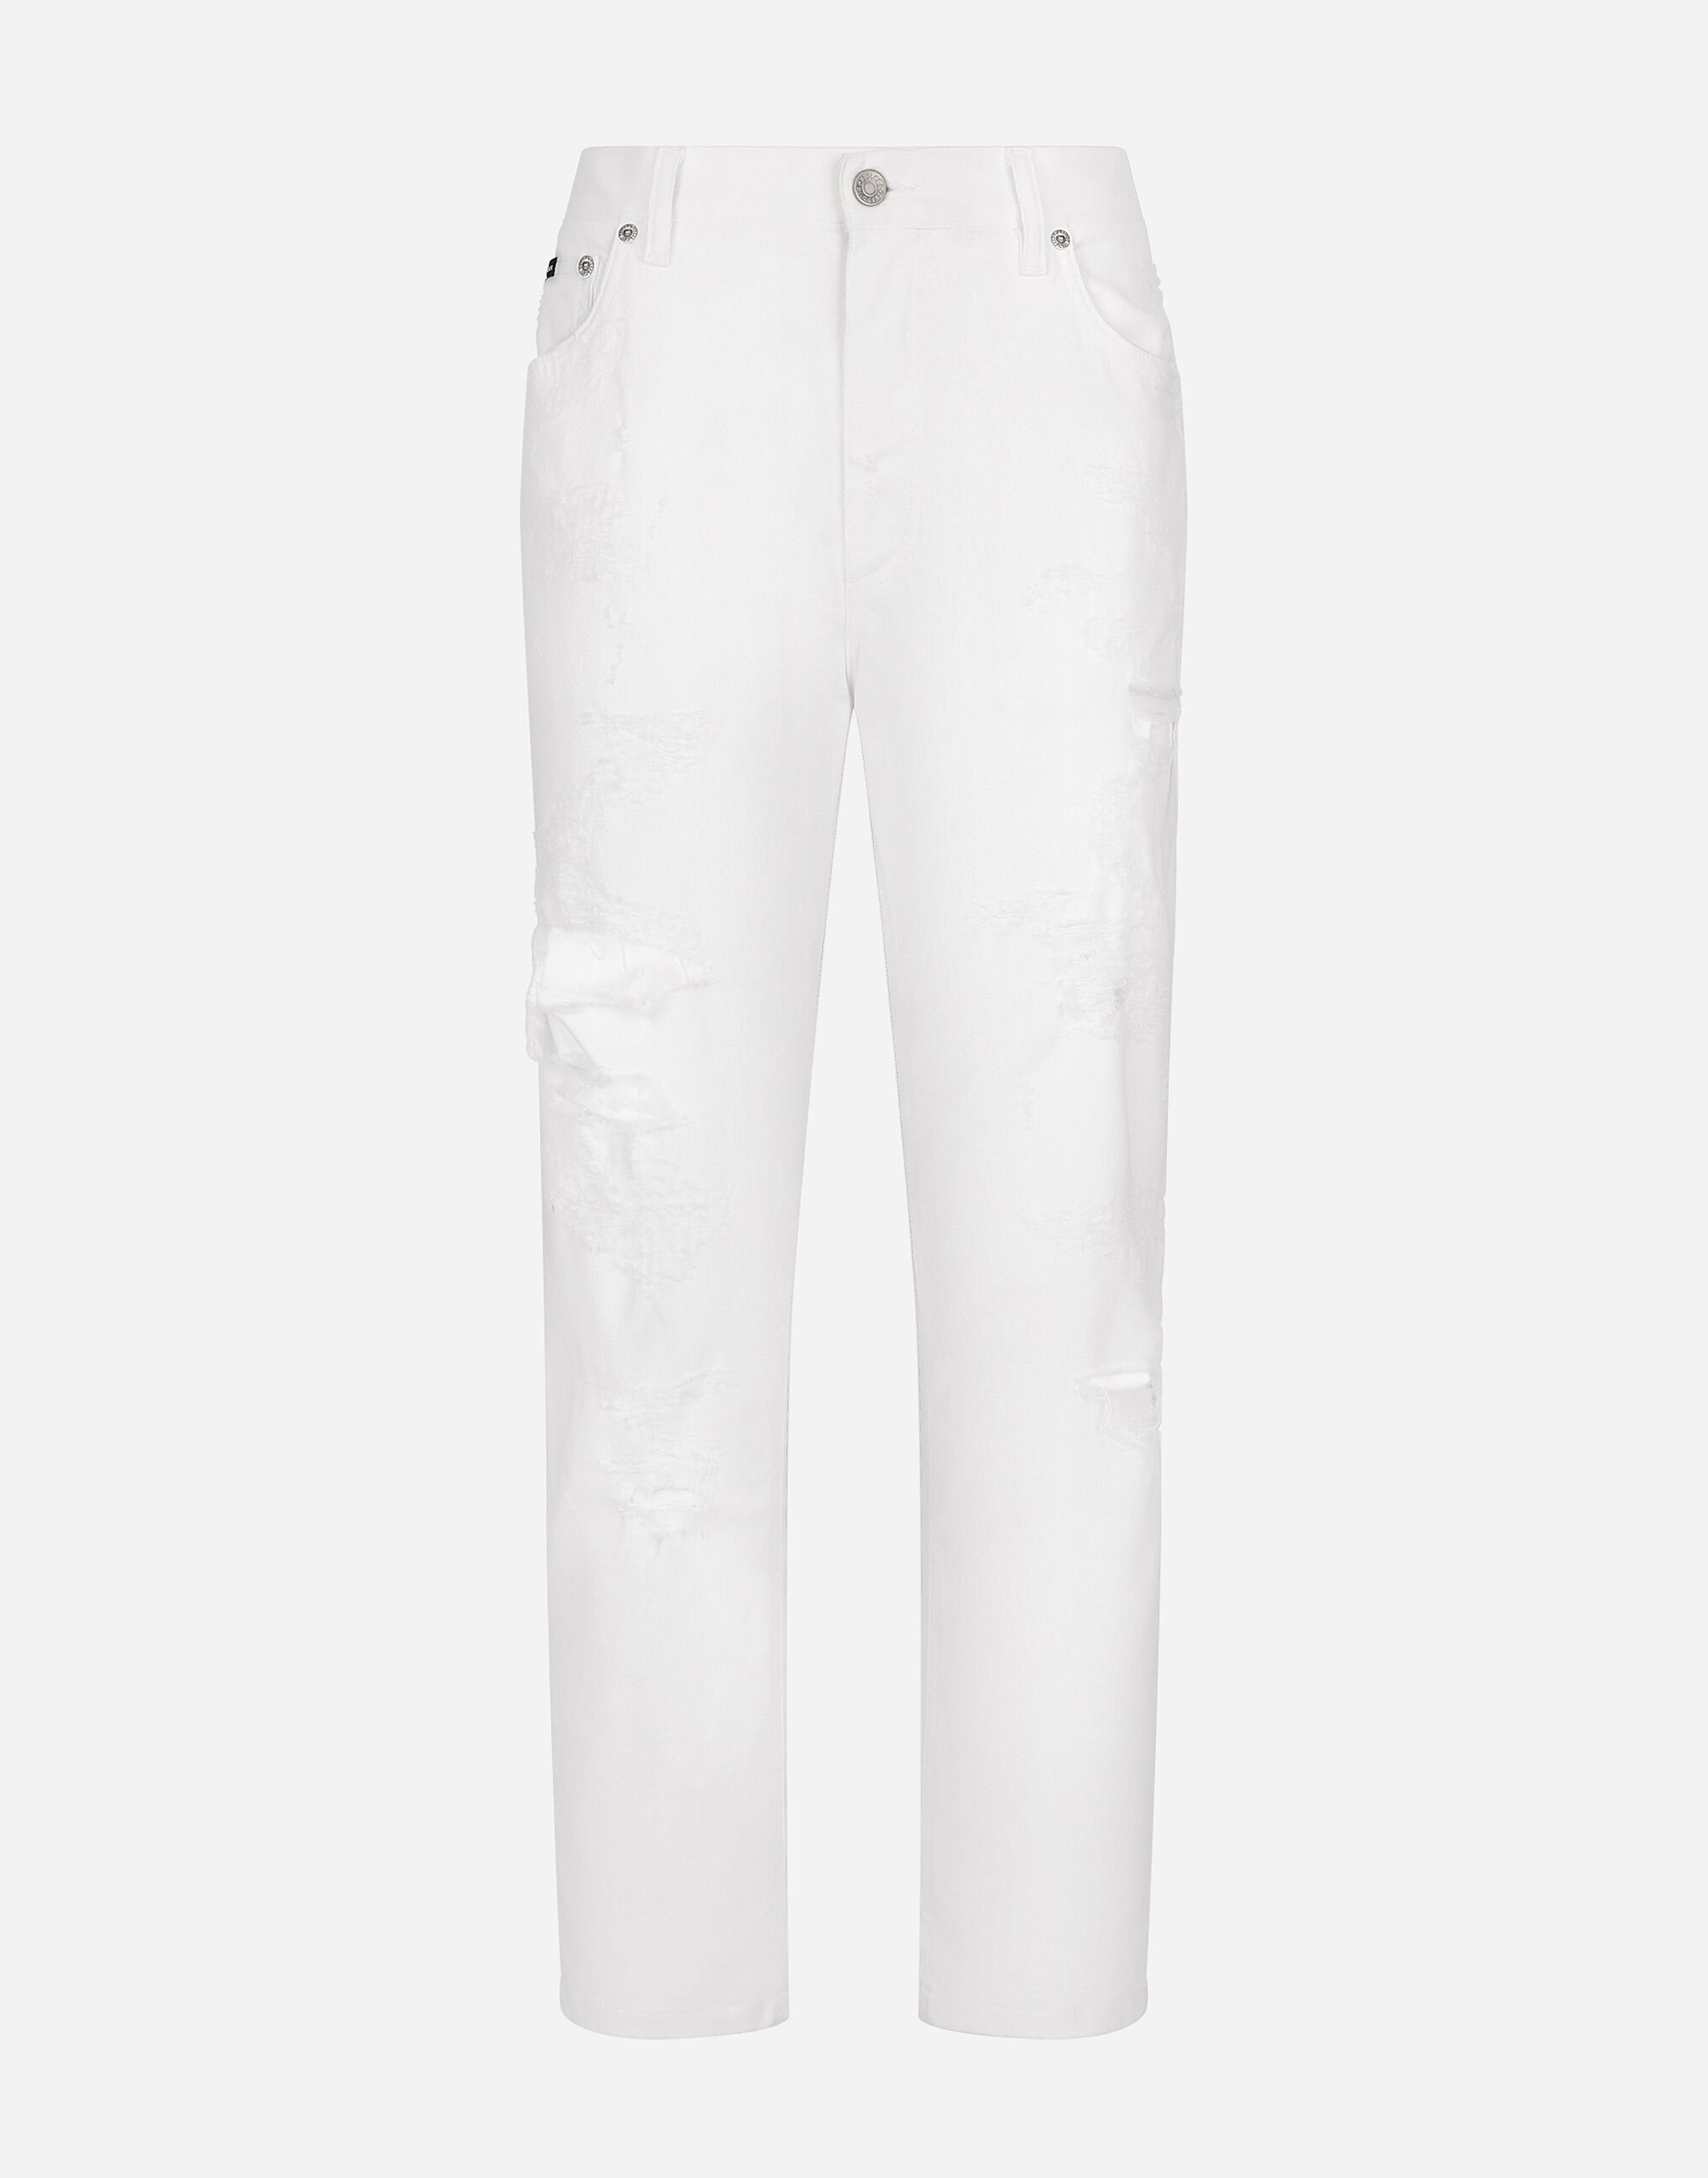 Dolce & Gabbana Jeans in denim di cotone con rotture Multicolore F9R95DG8KZ4